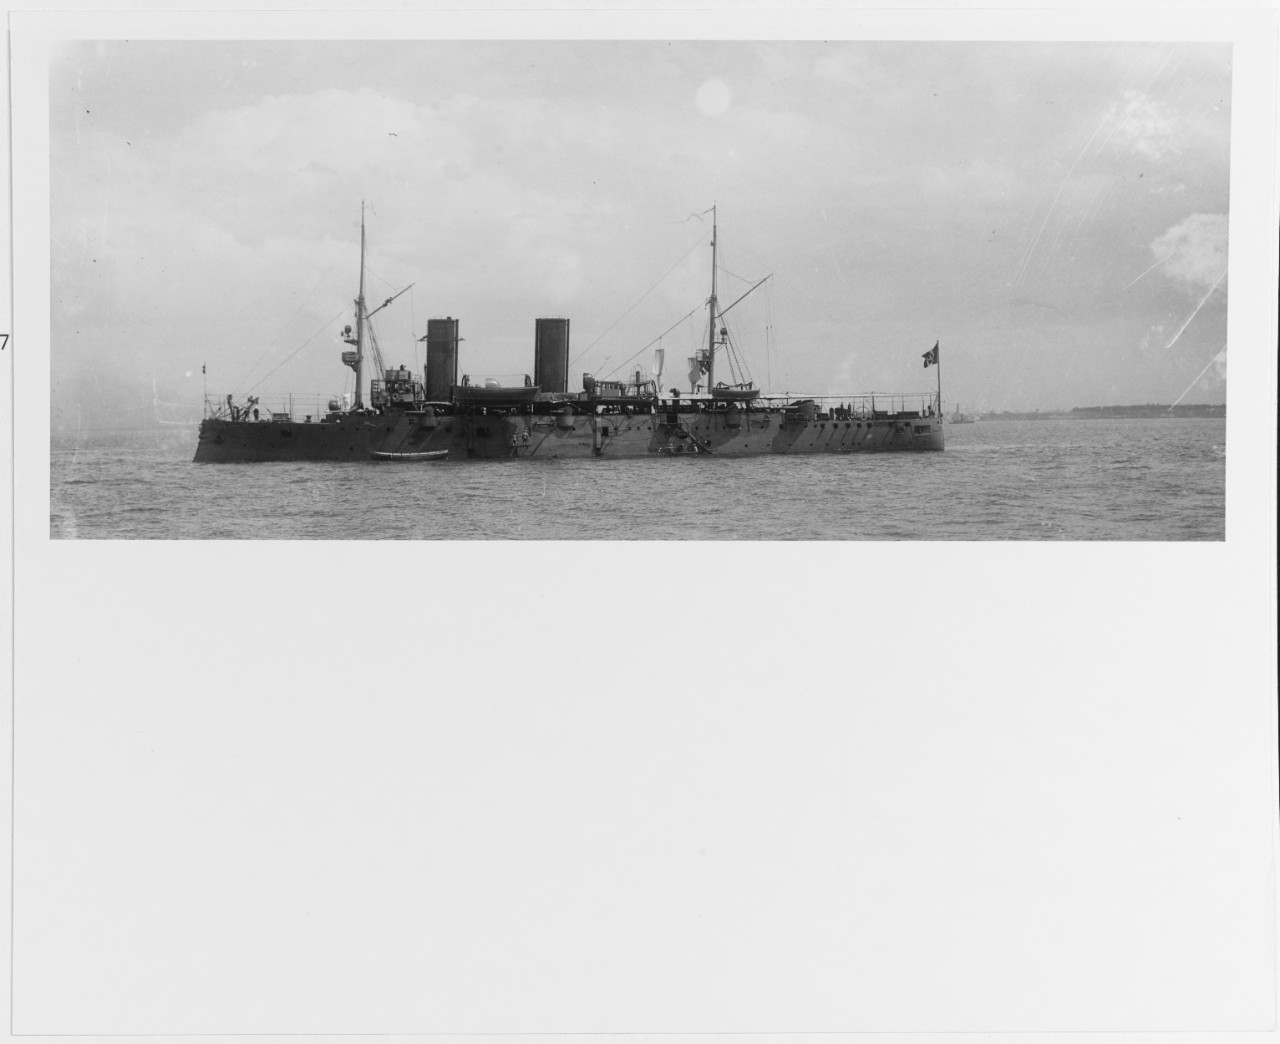 ETRURIA (Italian cruiser, 1891)